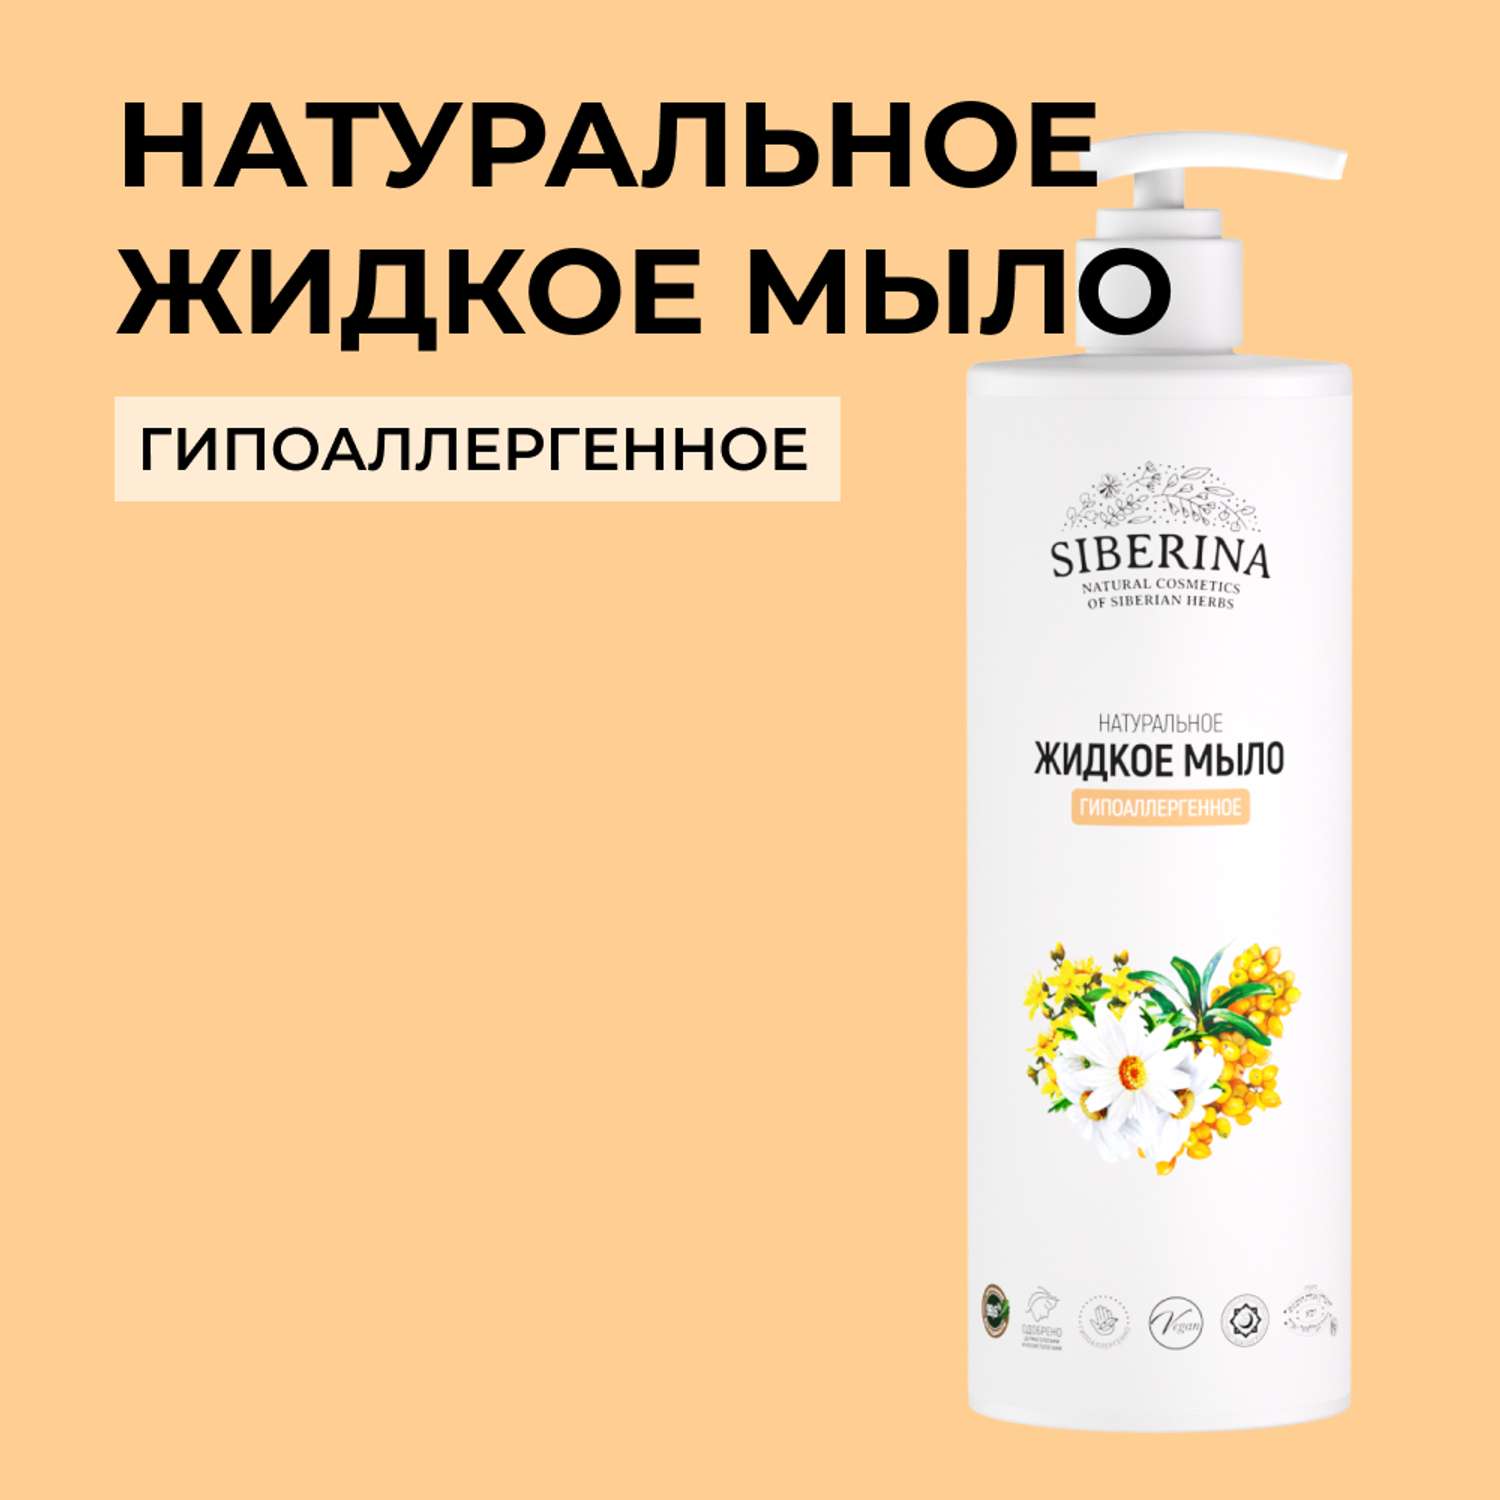 Жидкое мыло Siberina натуральное «Гипоаллергенное» для всей семьи 400 мл - фото 1